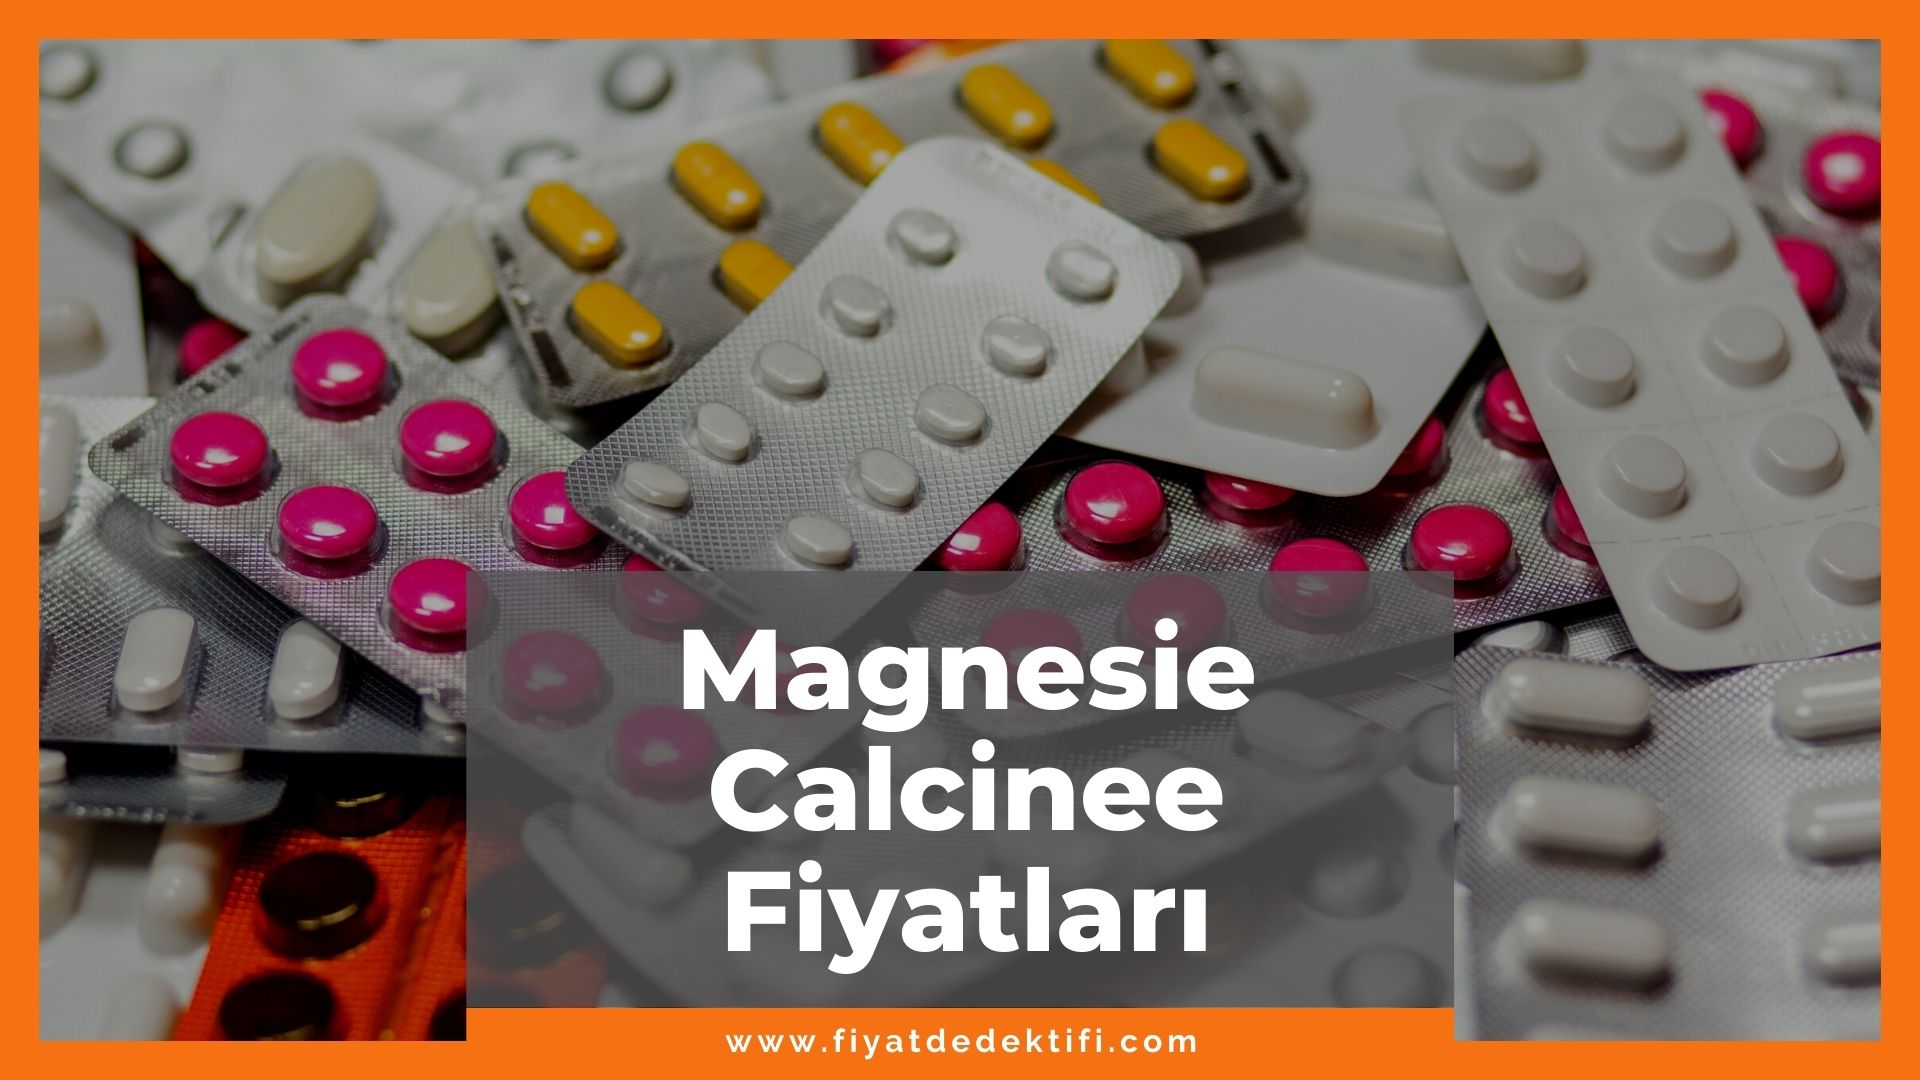 Magnesie Calcinee Fiyat 2021, Magnesie Calcinee Saba Toz Fiyatı, magnesie calcinee zamlandı mı, magnesie calcinee zamlı fiyat ne kadar kaç tl